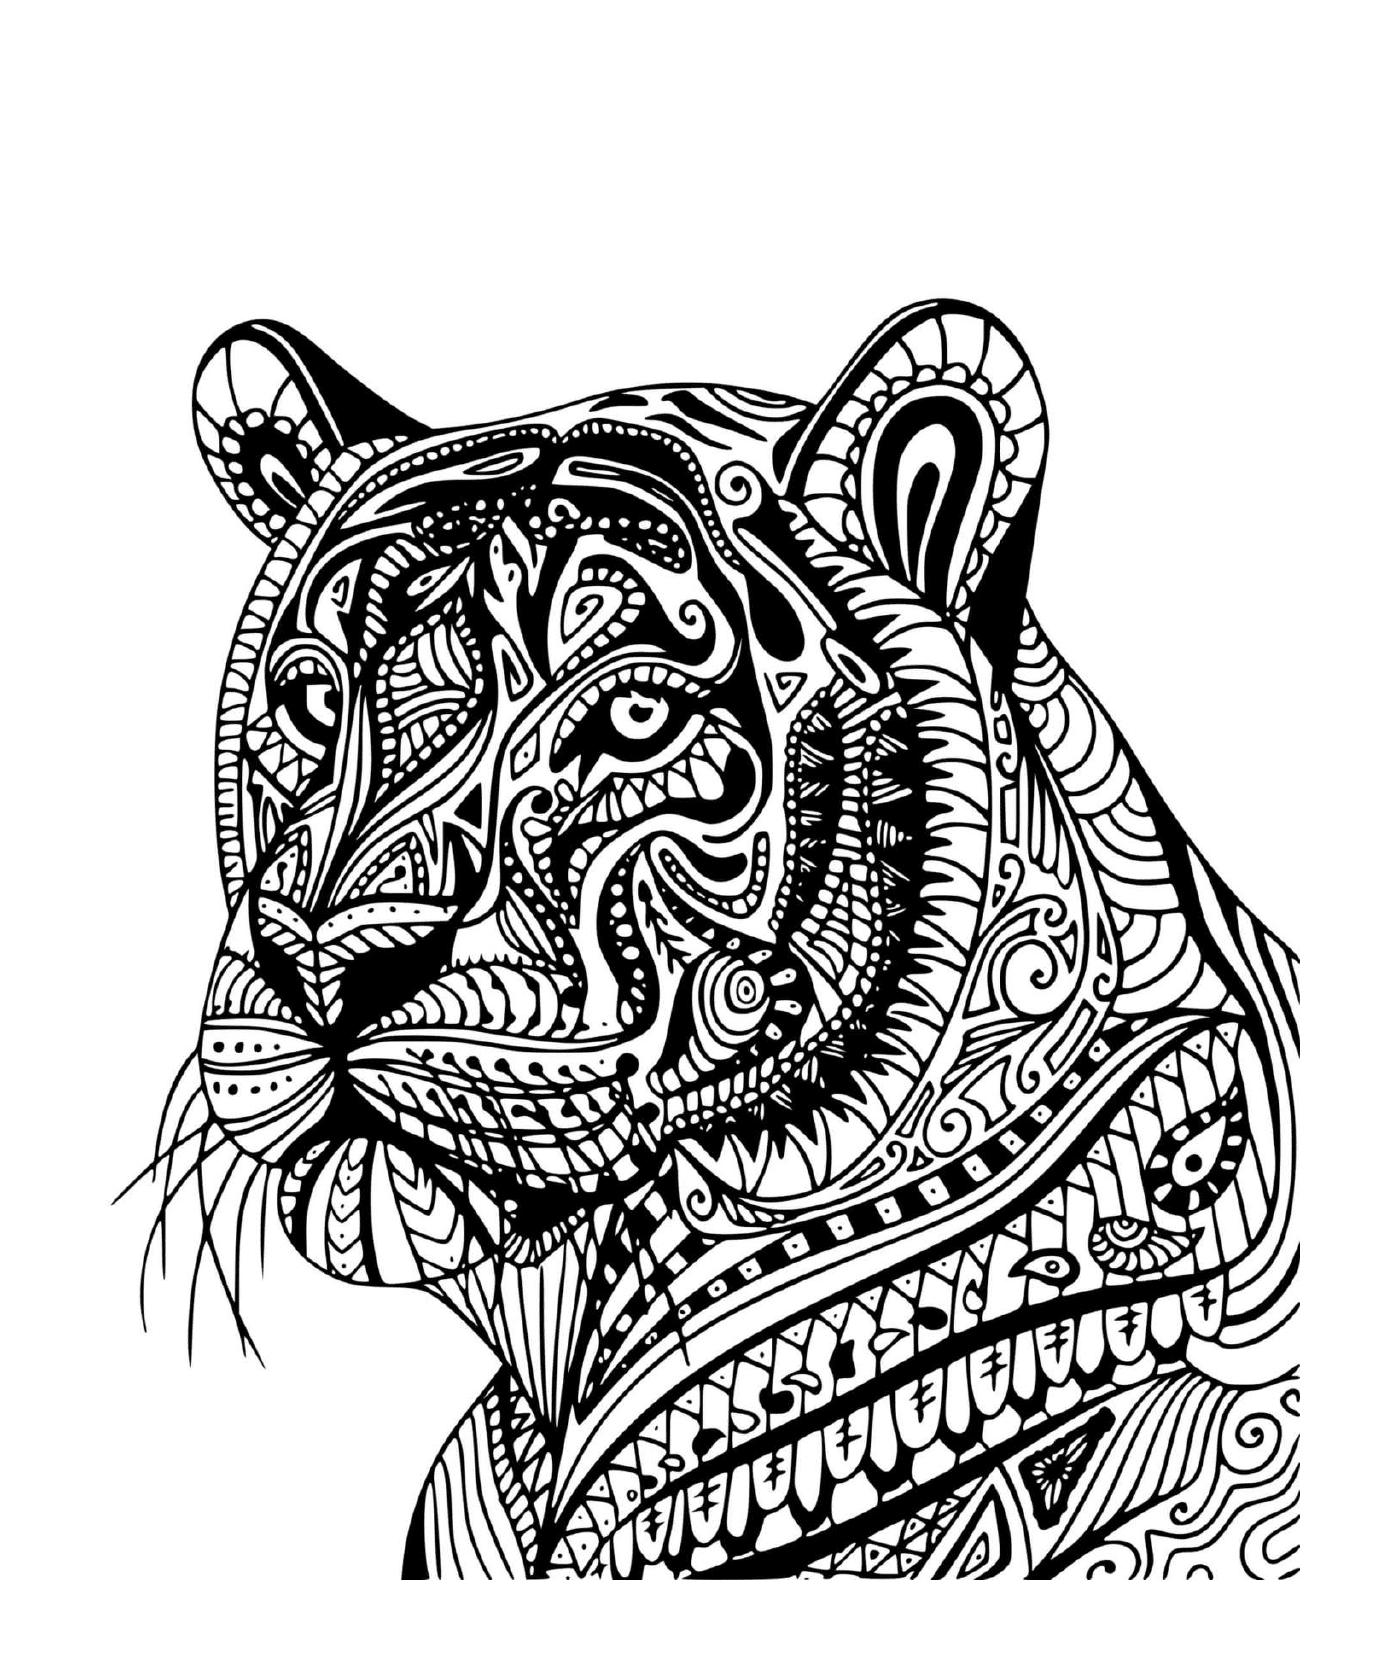  Un tigre adulto de perfil 